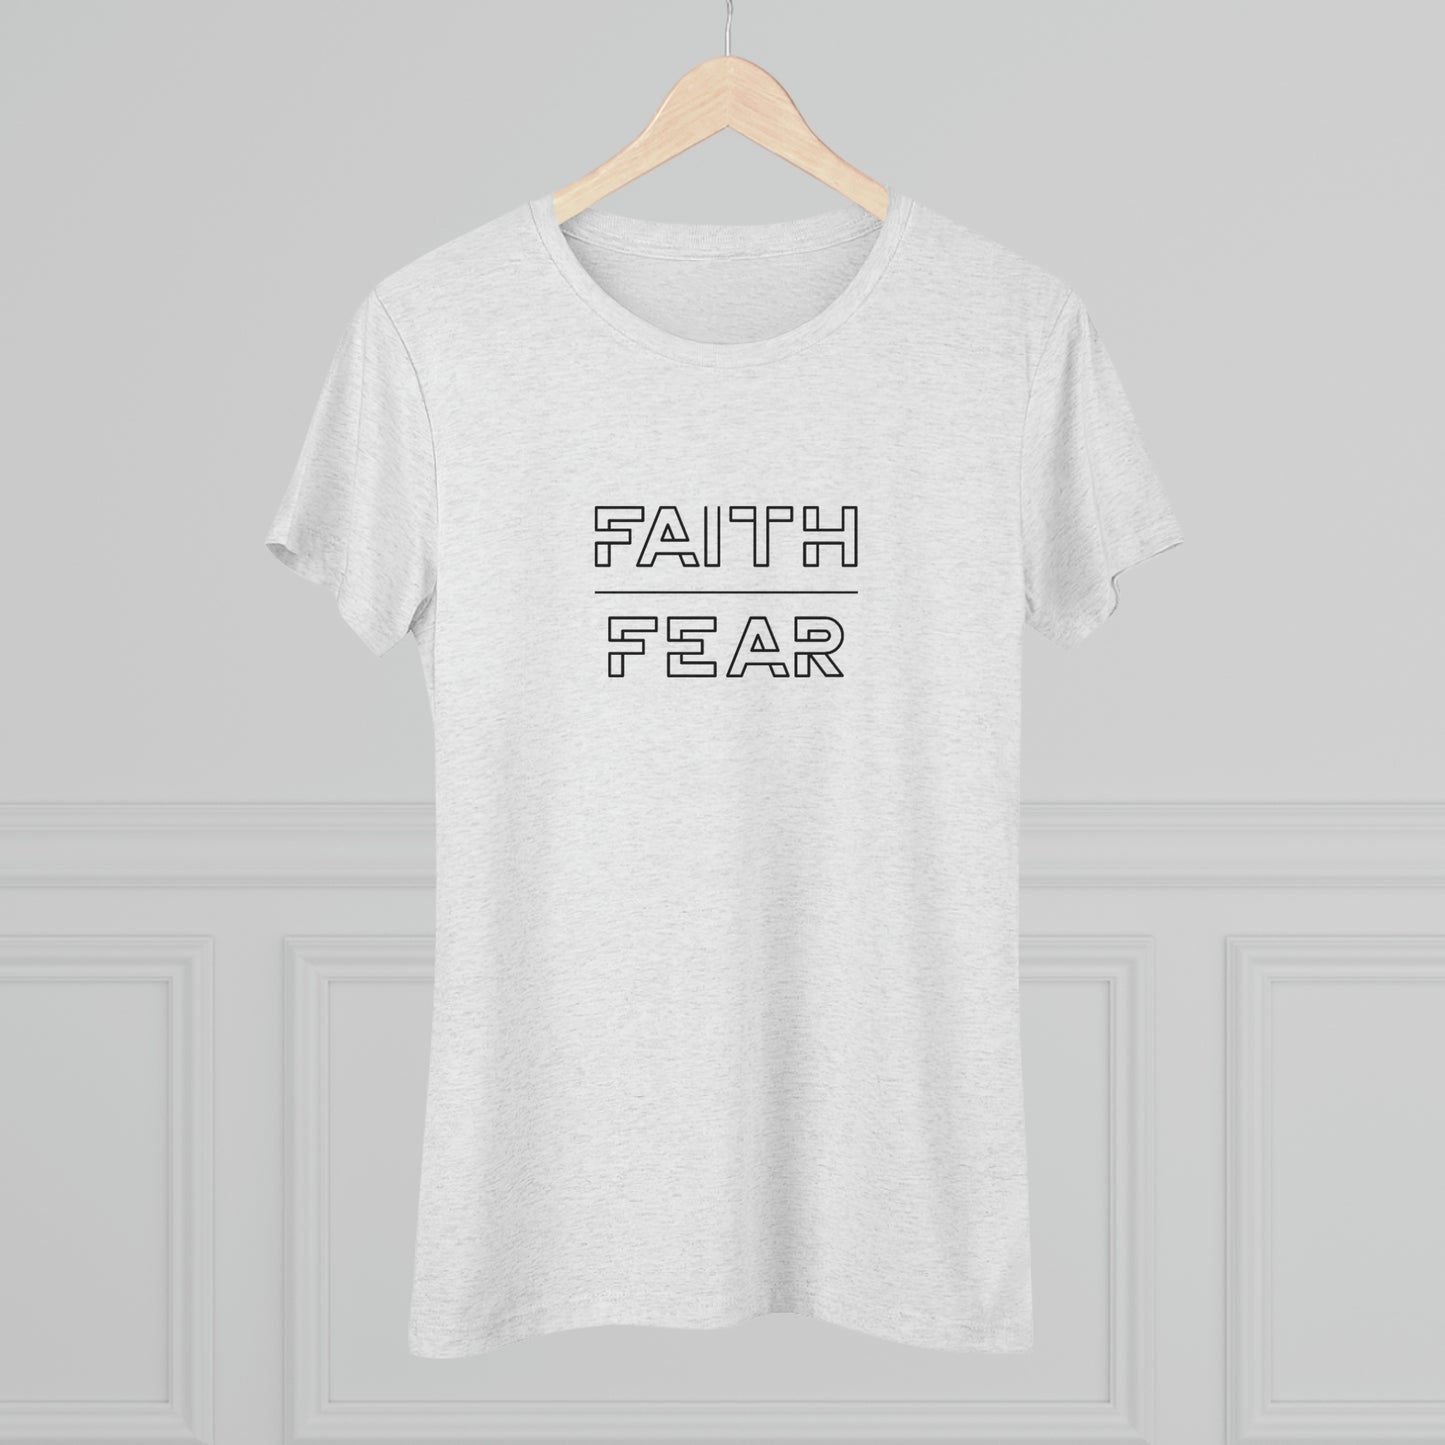 Faith Over Fear Women's Shirt (Triblend)